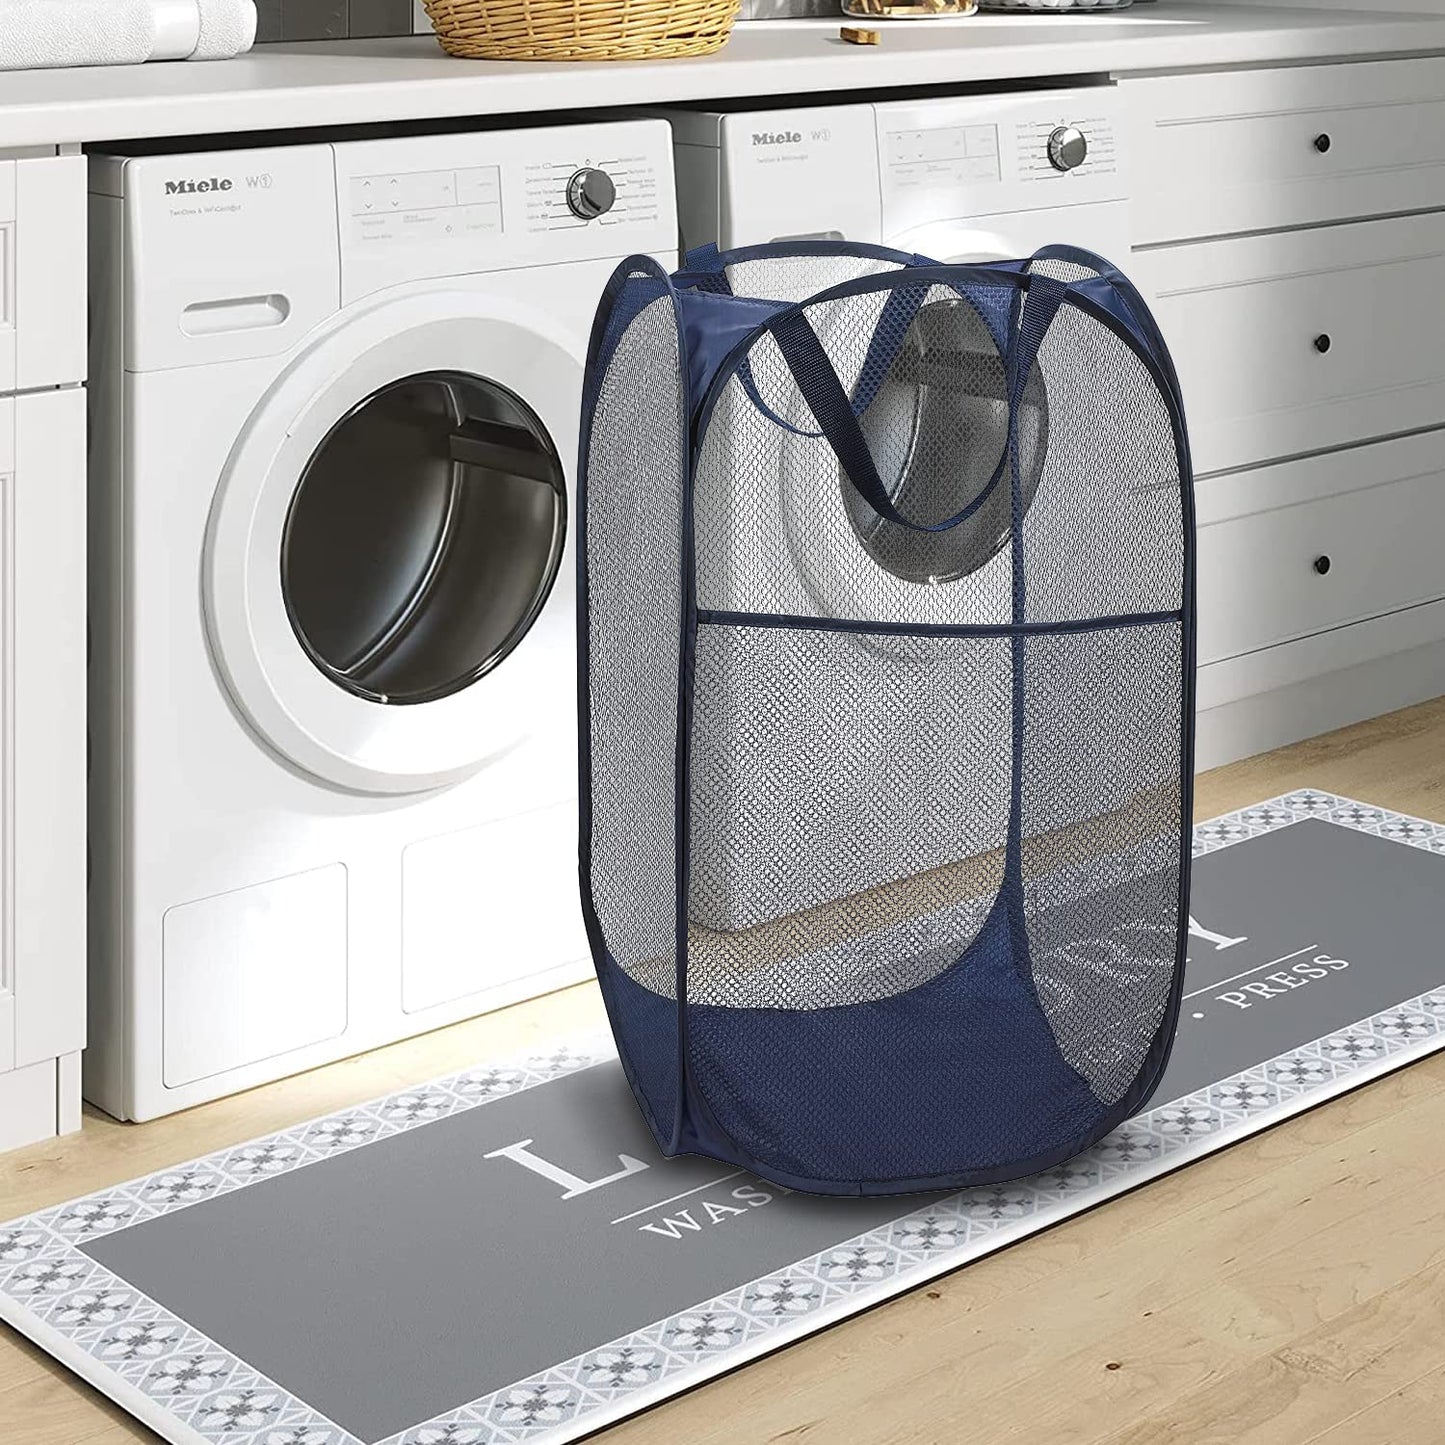 BATTOO Deluxe Strong Mesh Pop up Laundry Hamper Basket with Side Pocket Foldable Hamper for Laundry Room, Bathroom, Kids Room, College Dorm or Travel Navy + Black